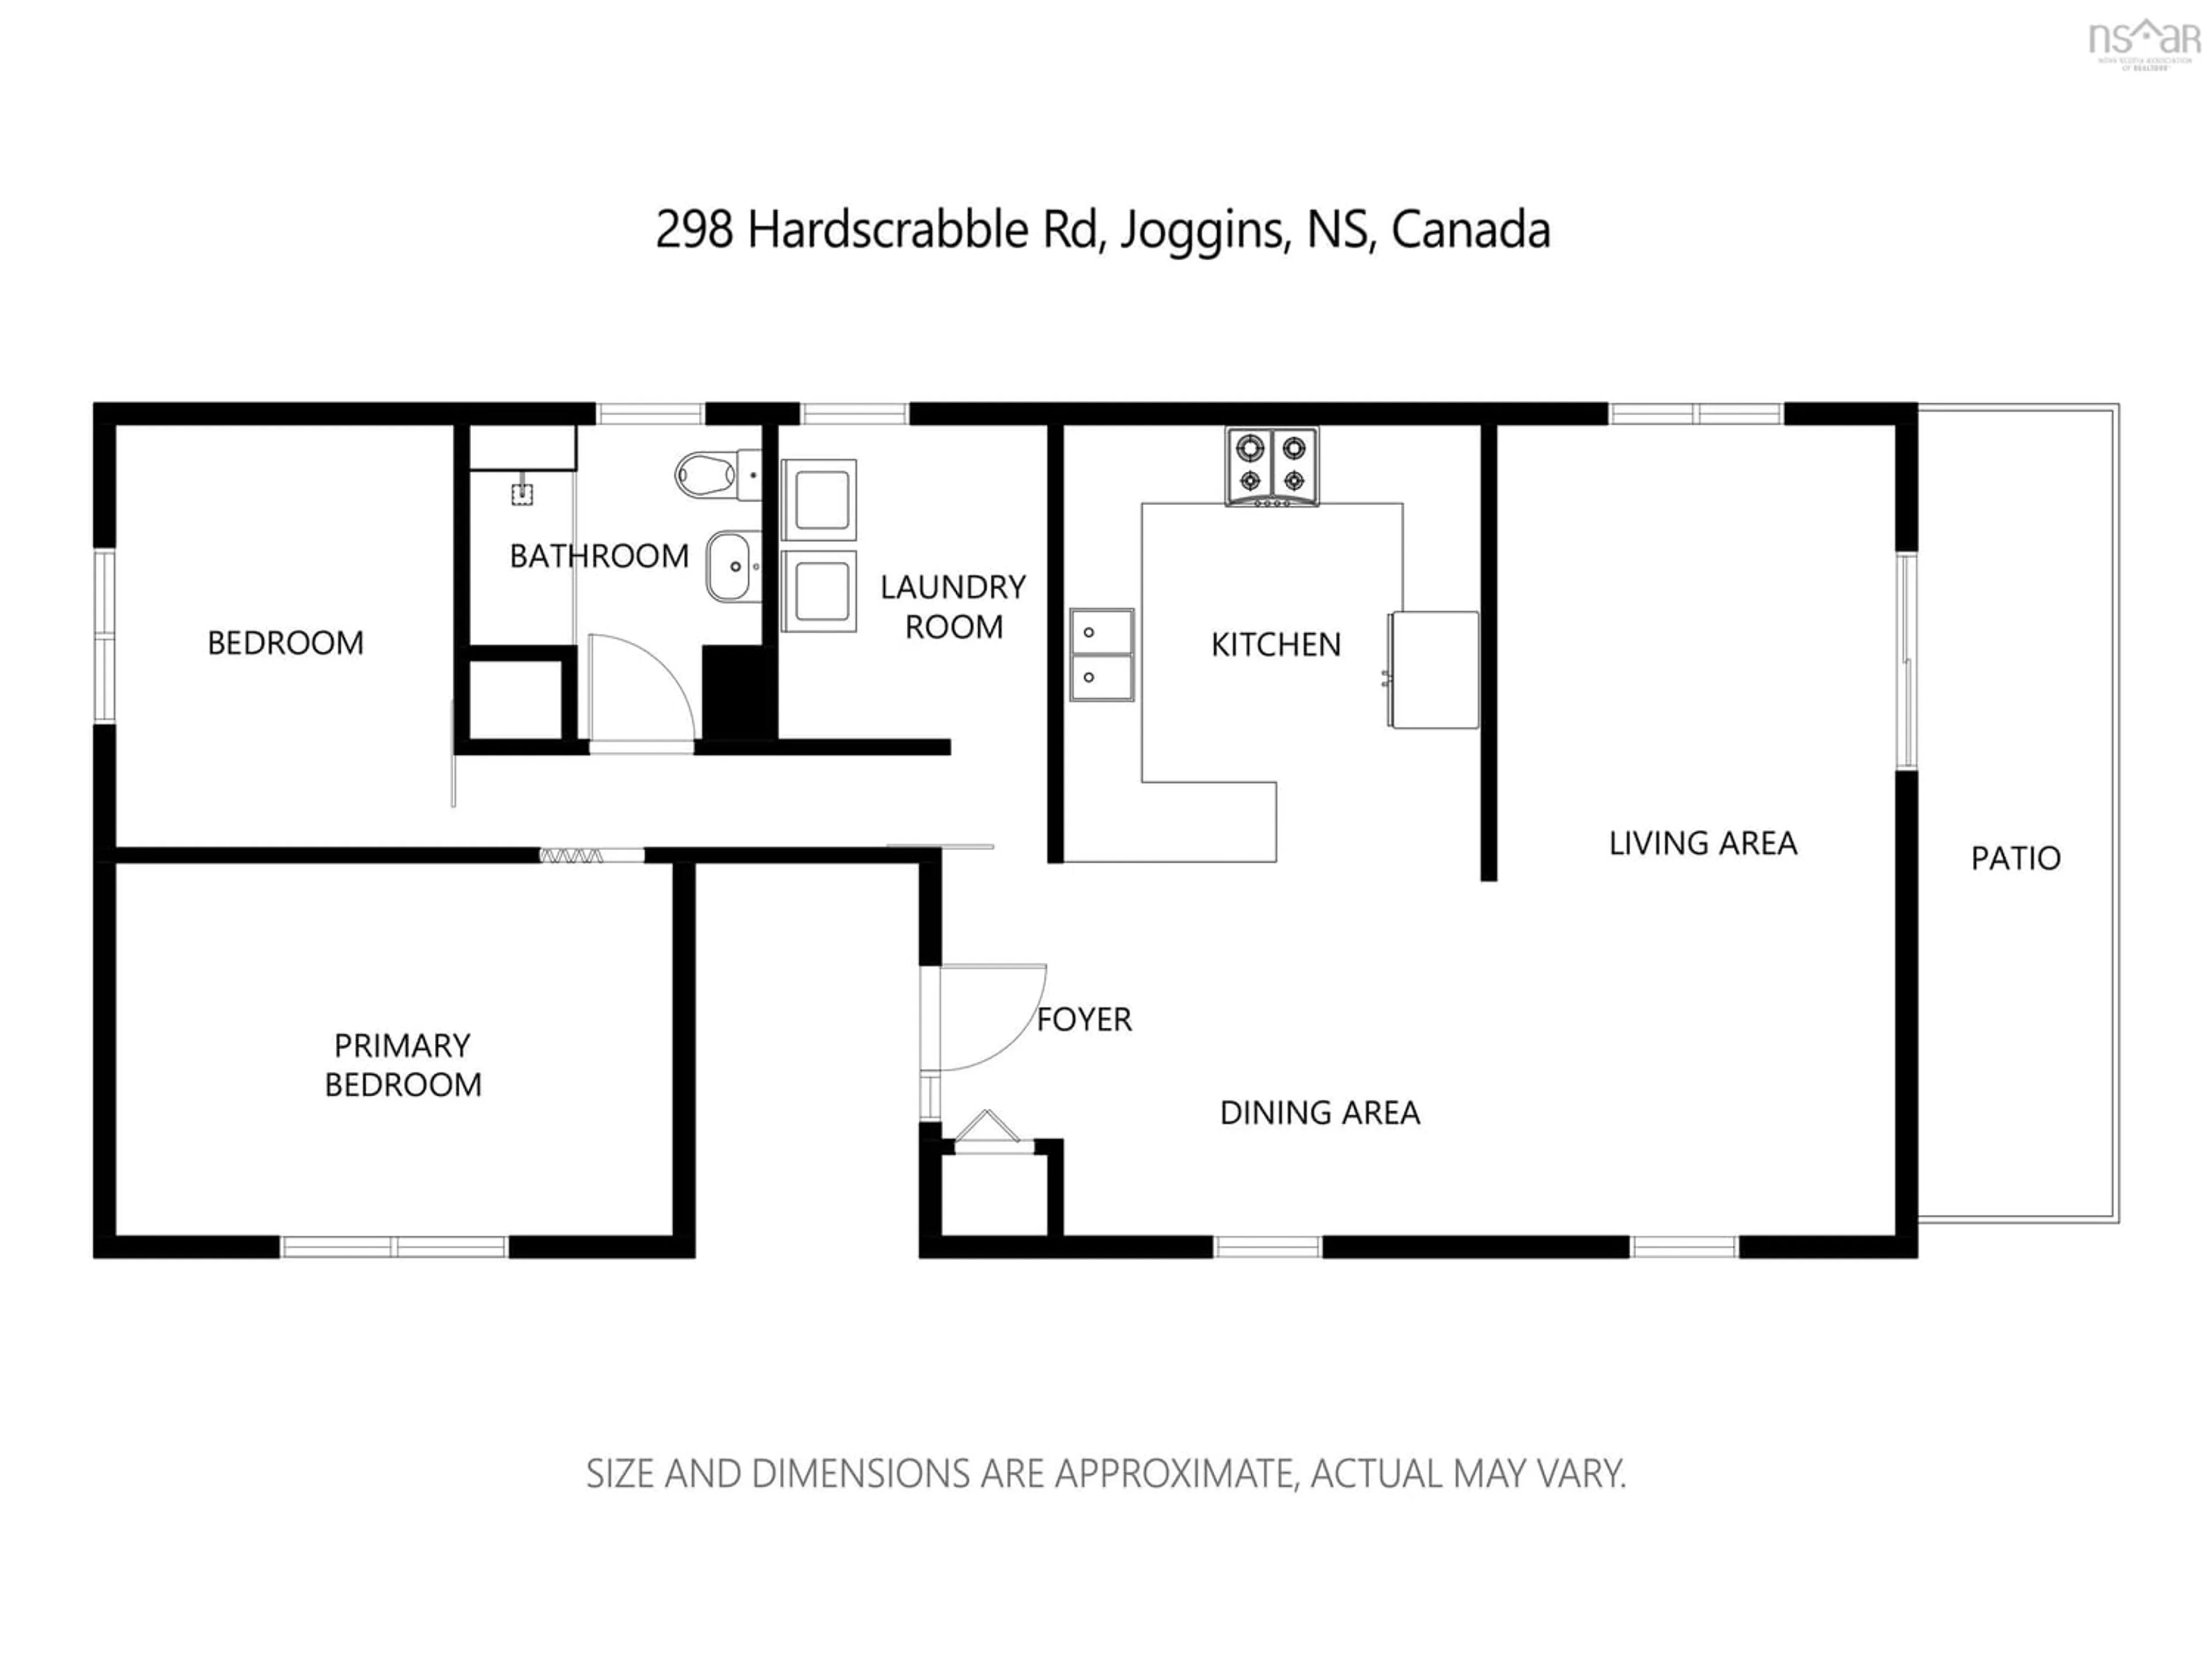 Floor plan for 298 Hardscrabble Rd, Joggins Nova Scotia B0L 1A0